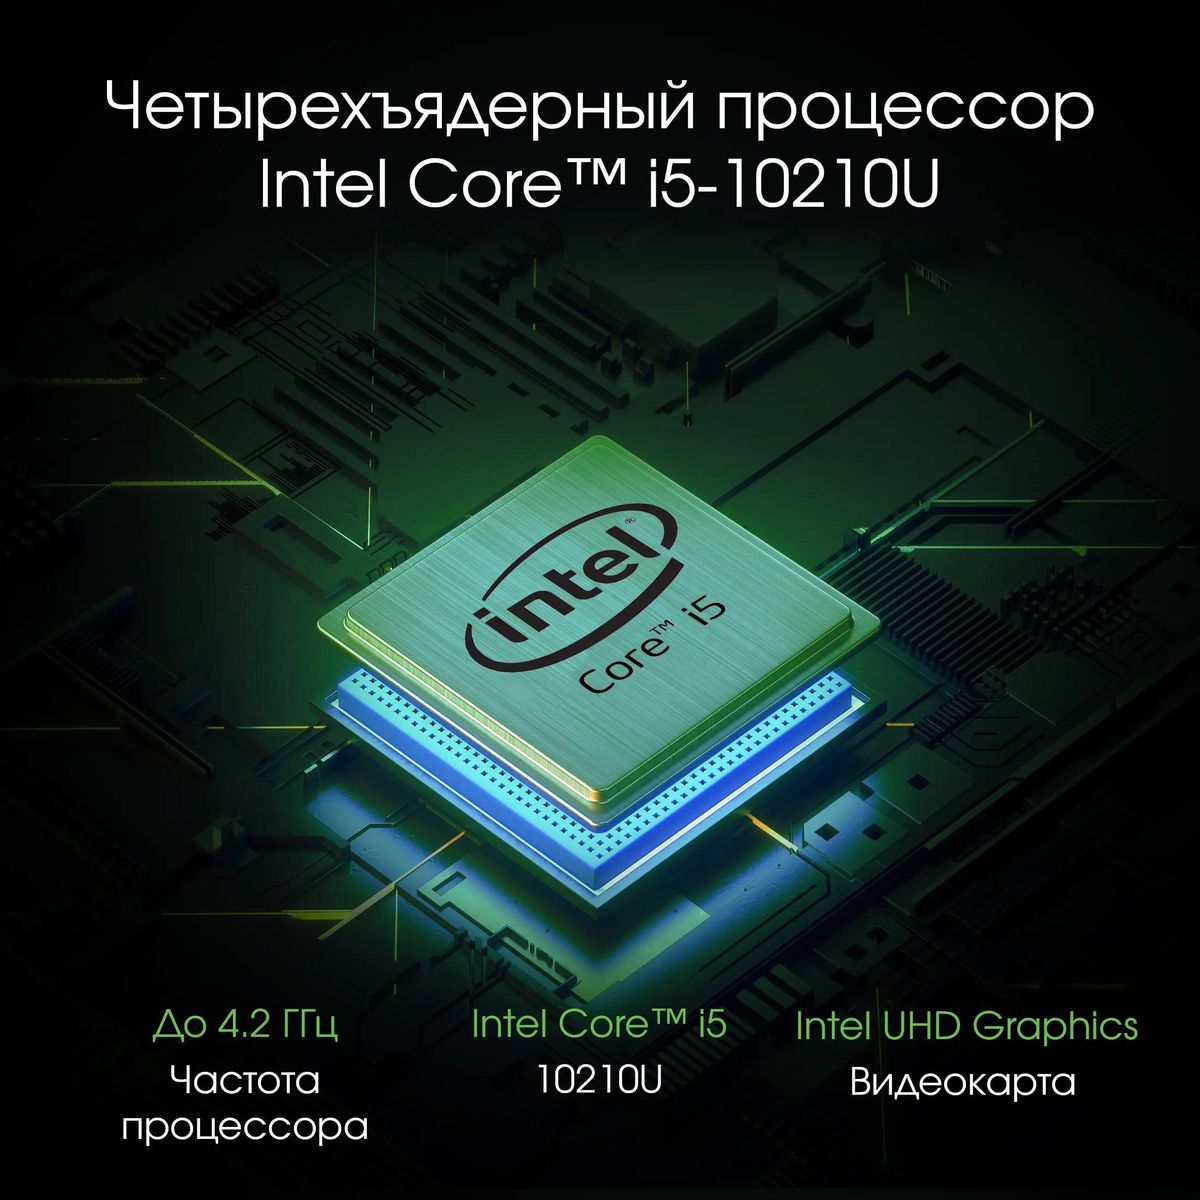 Моноблок DIGMA PRO AiO 27i, 27", Intel Core i5 10210U, 16ГБ, 512ГБ SSD,  Intel UHD Graphics, Windows 11 Professional, черный